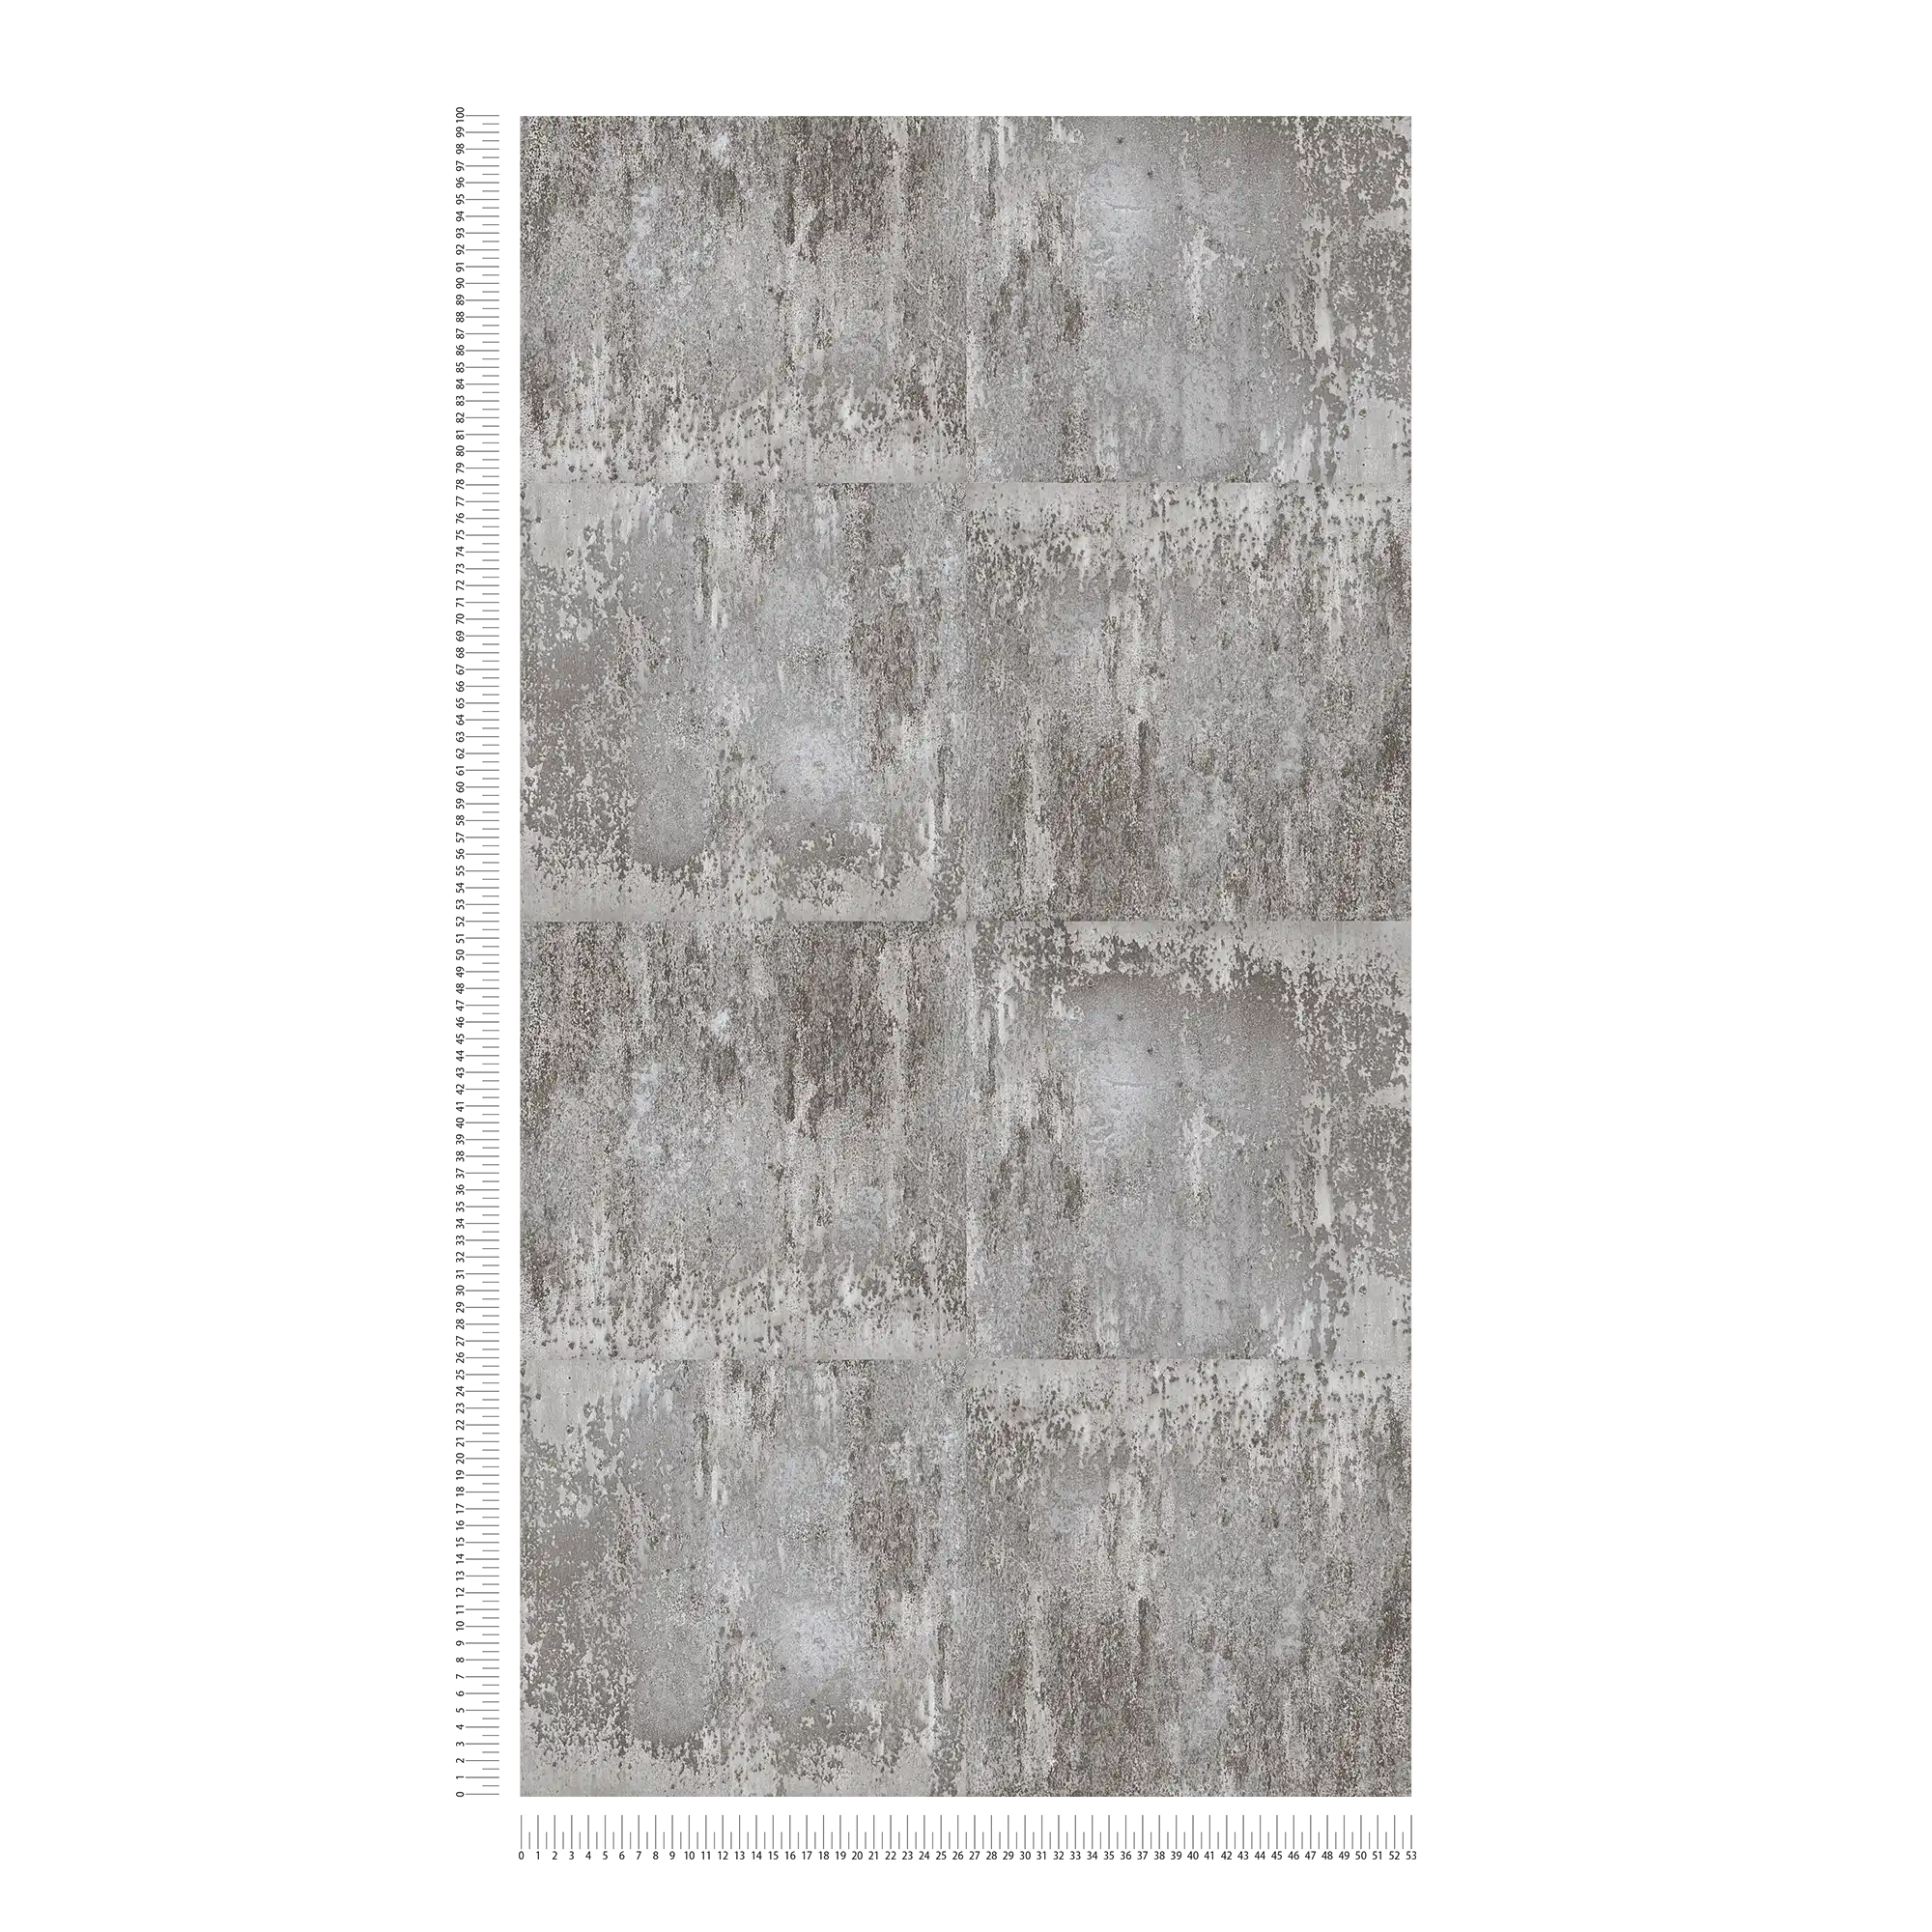             Zelfklevend behangpapier | roestlook design met metallic effect - grijs
        